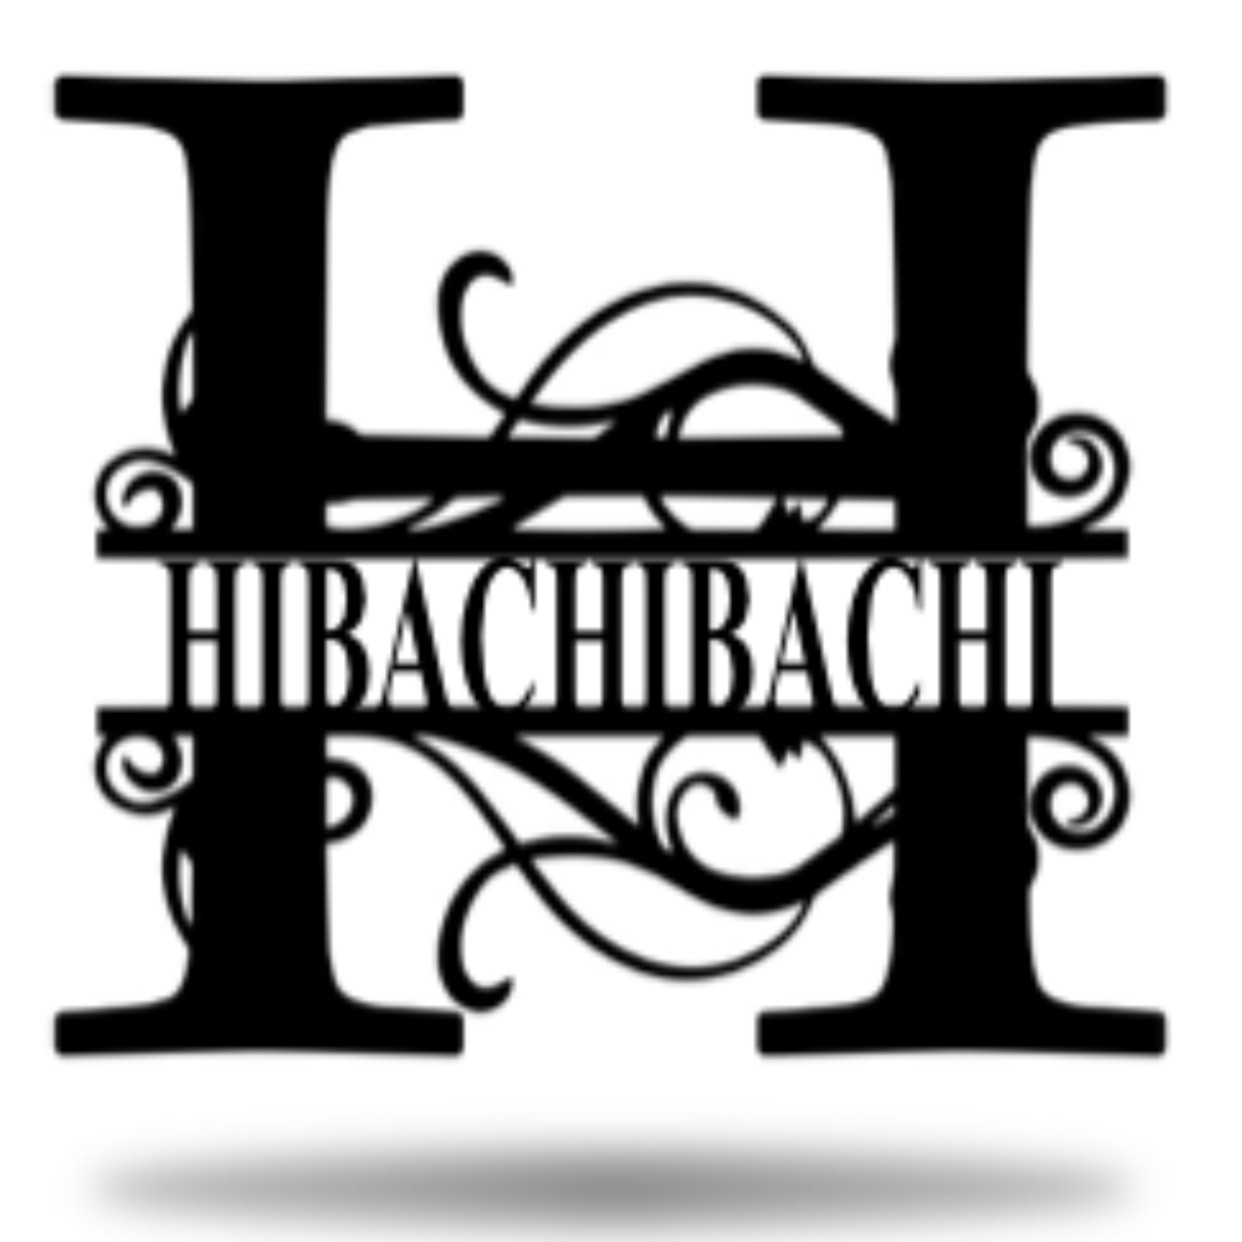 Inatome's HibachiBachi